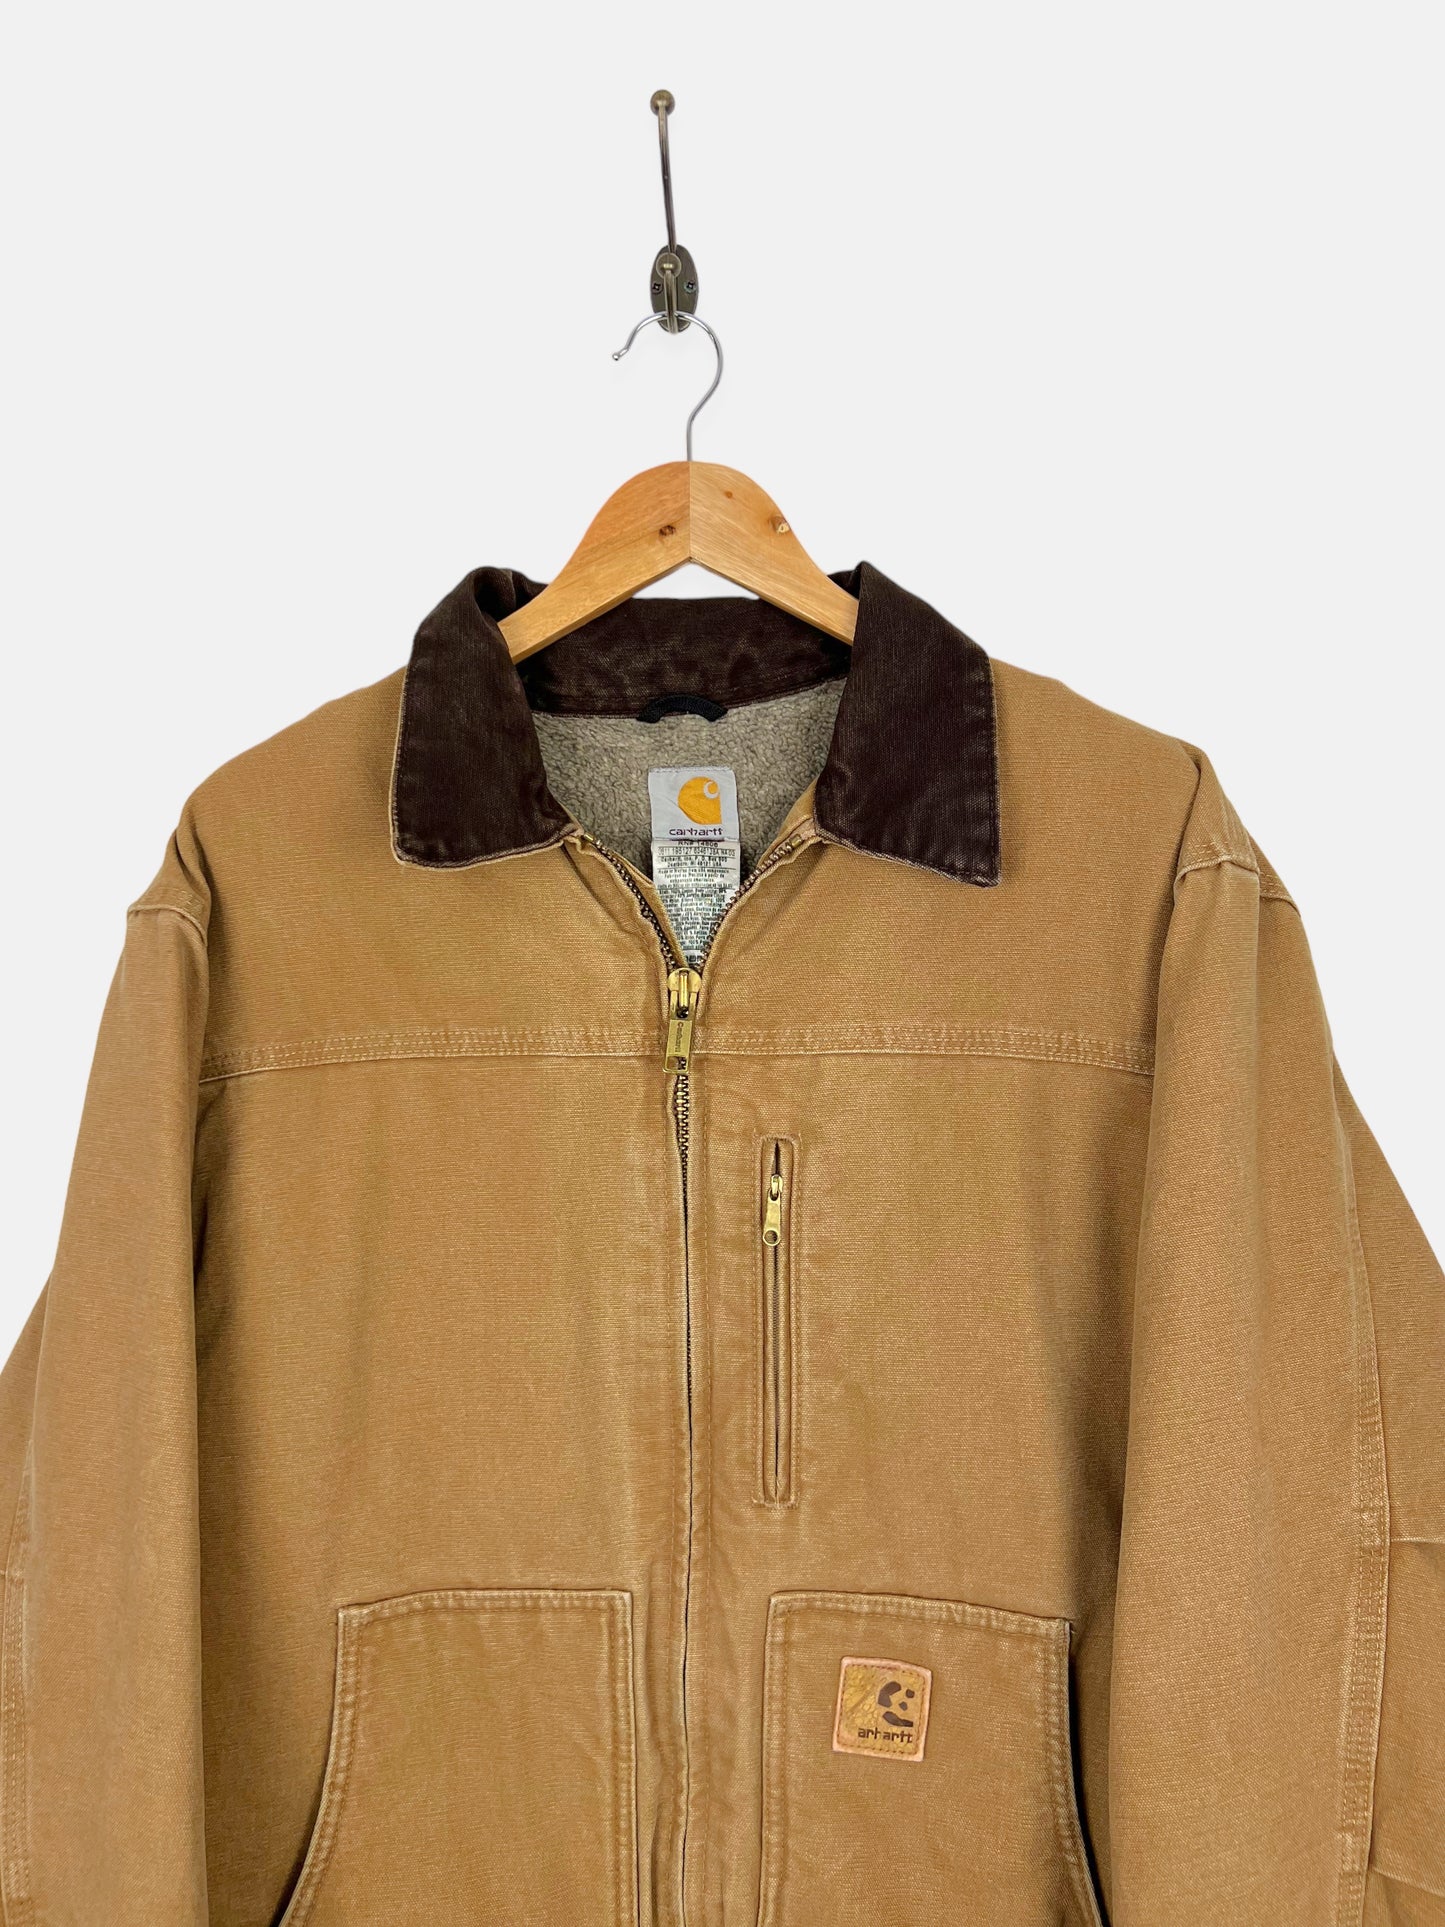 90's Carhartt Heavy Duty Sherpa Lined Vintage Jacket Size XL